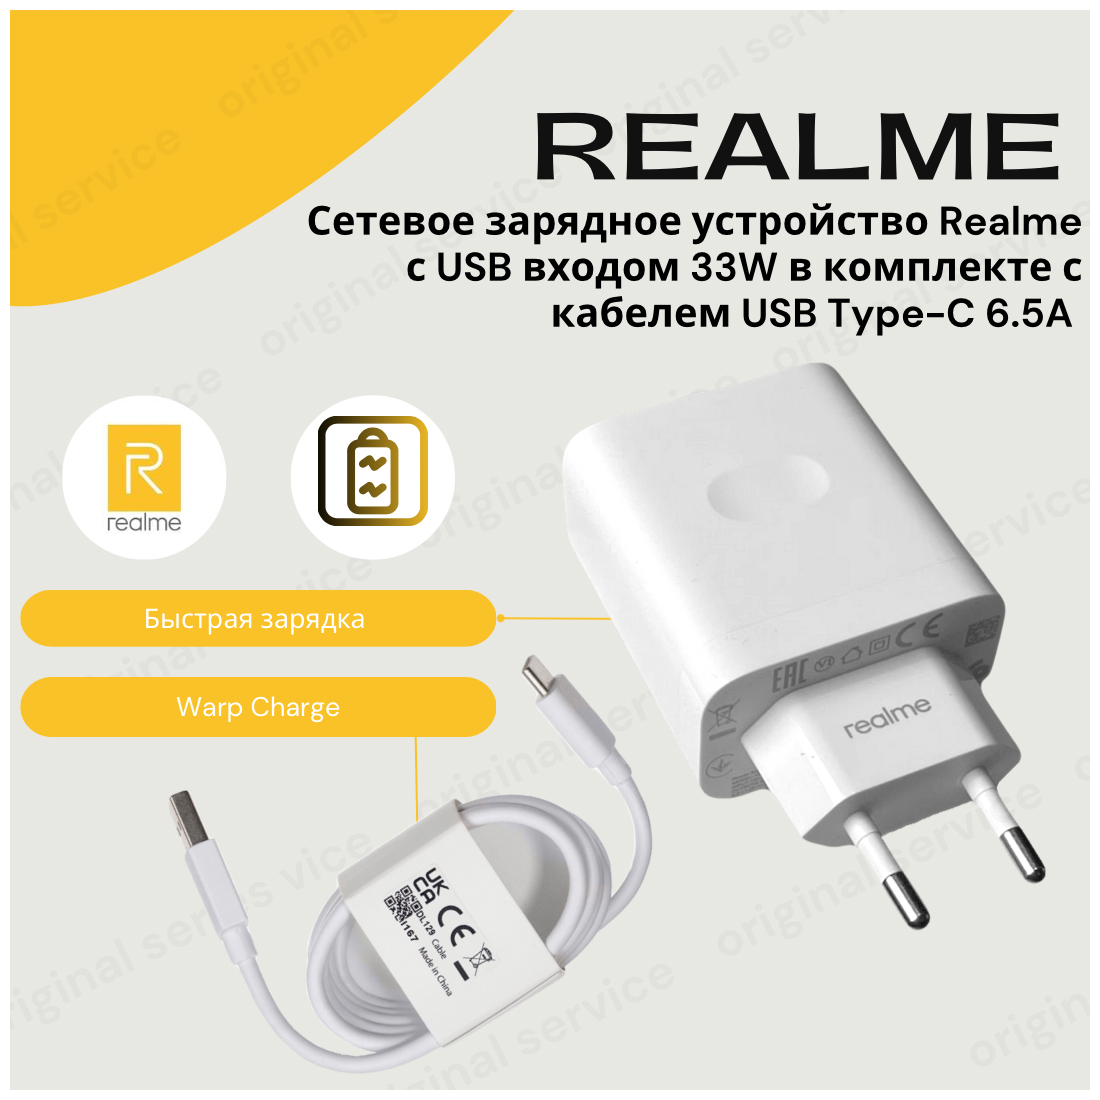 Сетевое зарядное устройство для Realme с USB входом 33W в комплекте с кабелем USB Type-C 6.5A (SuperDart Charge)